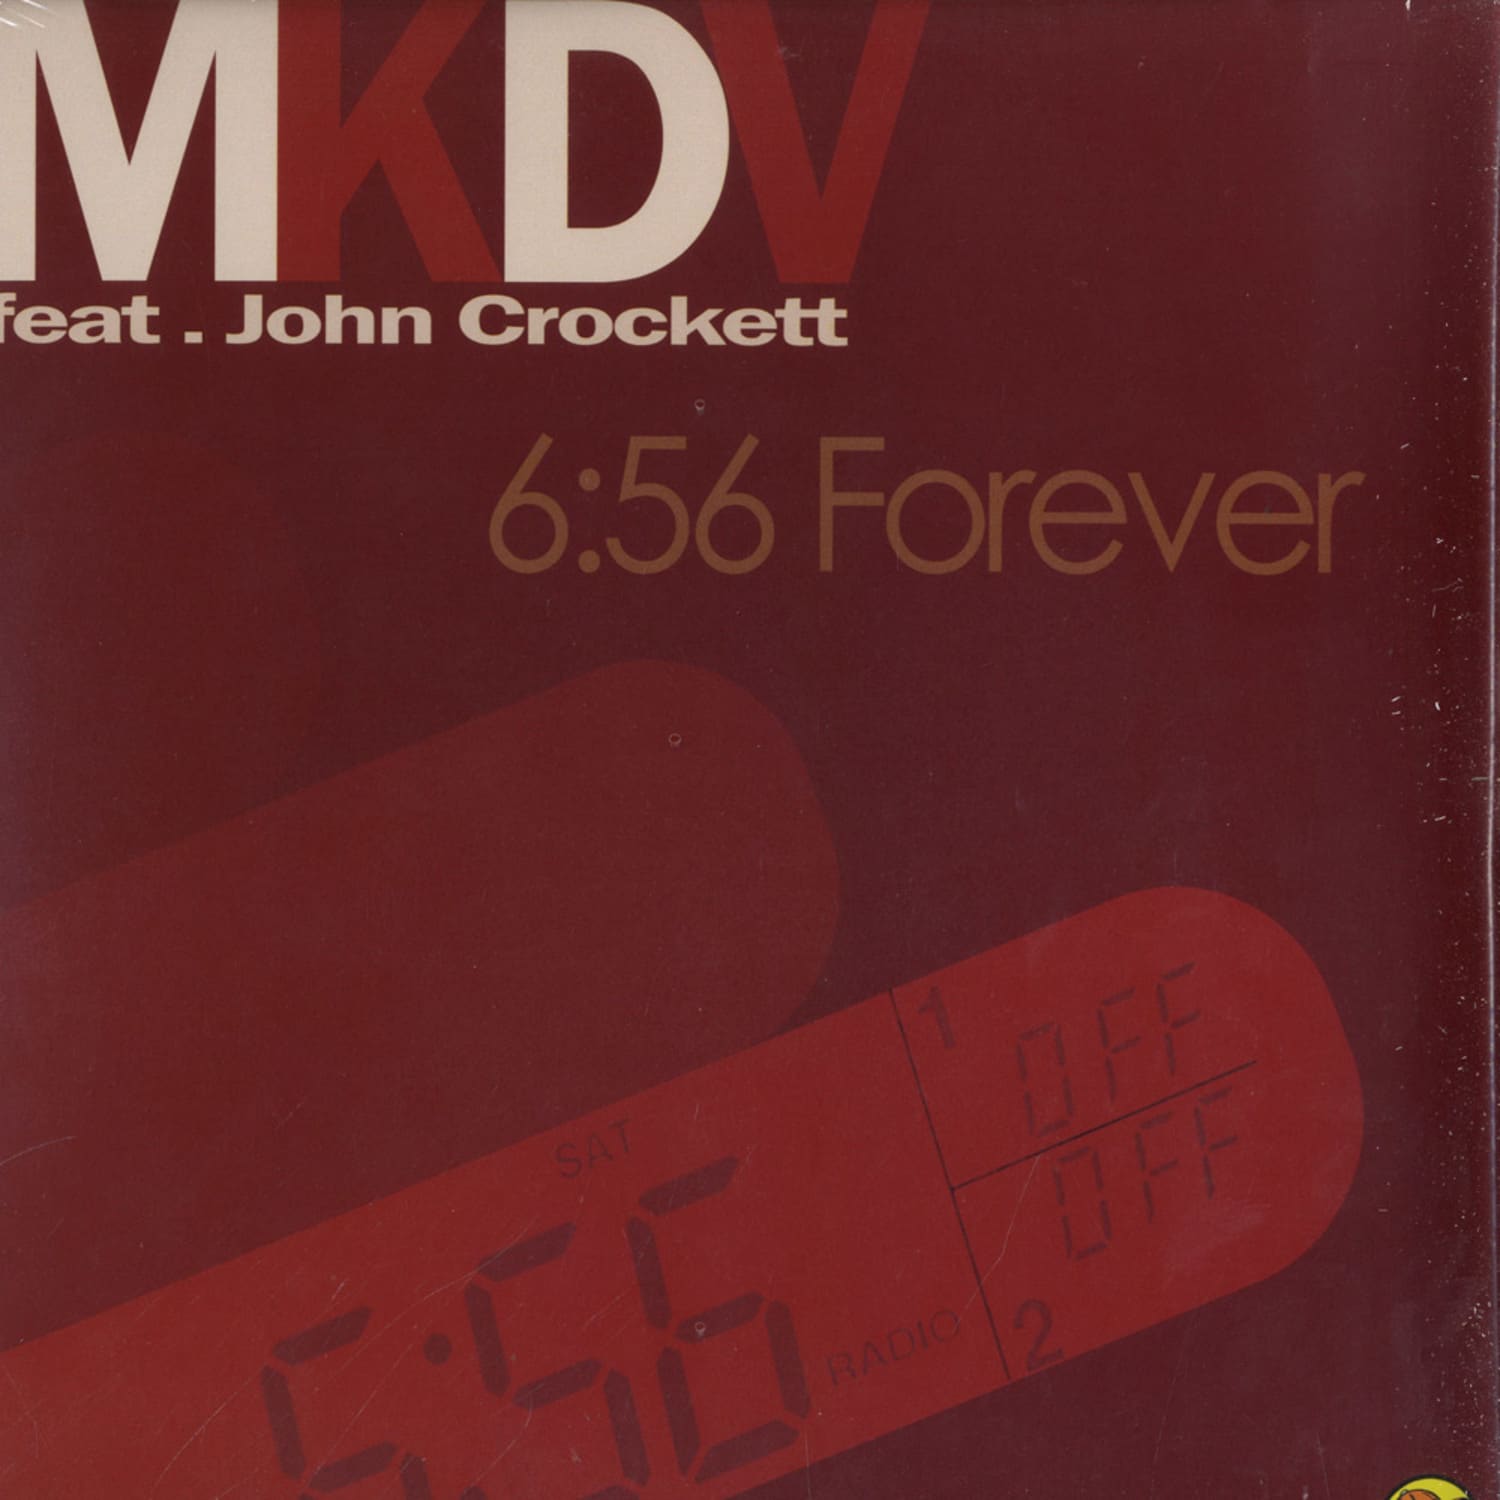 MKDV feat. John Crockett - 6:56 FOREVER